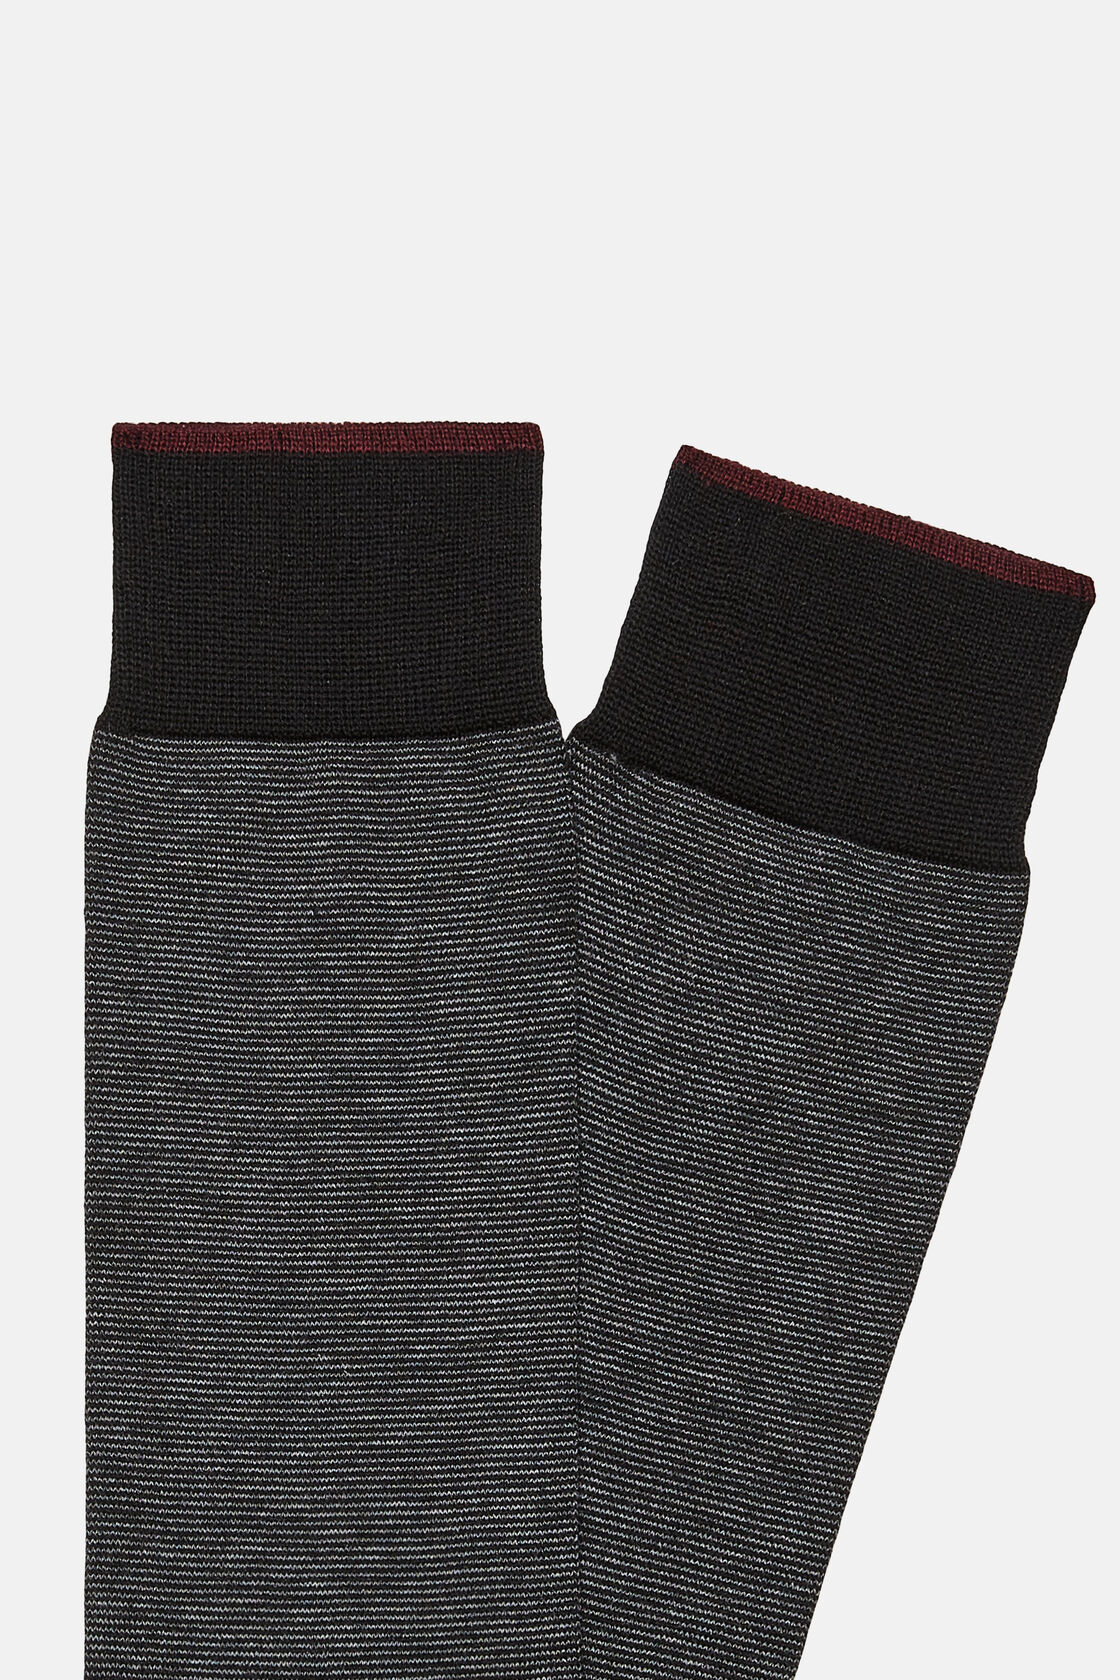 Κάλτσες ριγέ από οργανικό βαμβάκι, Grey, hi-res